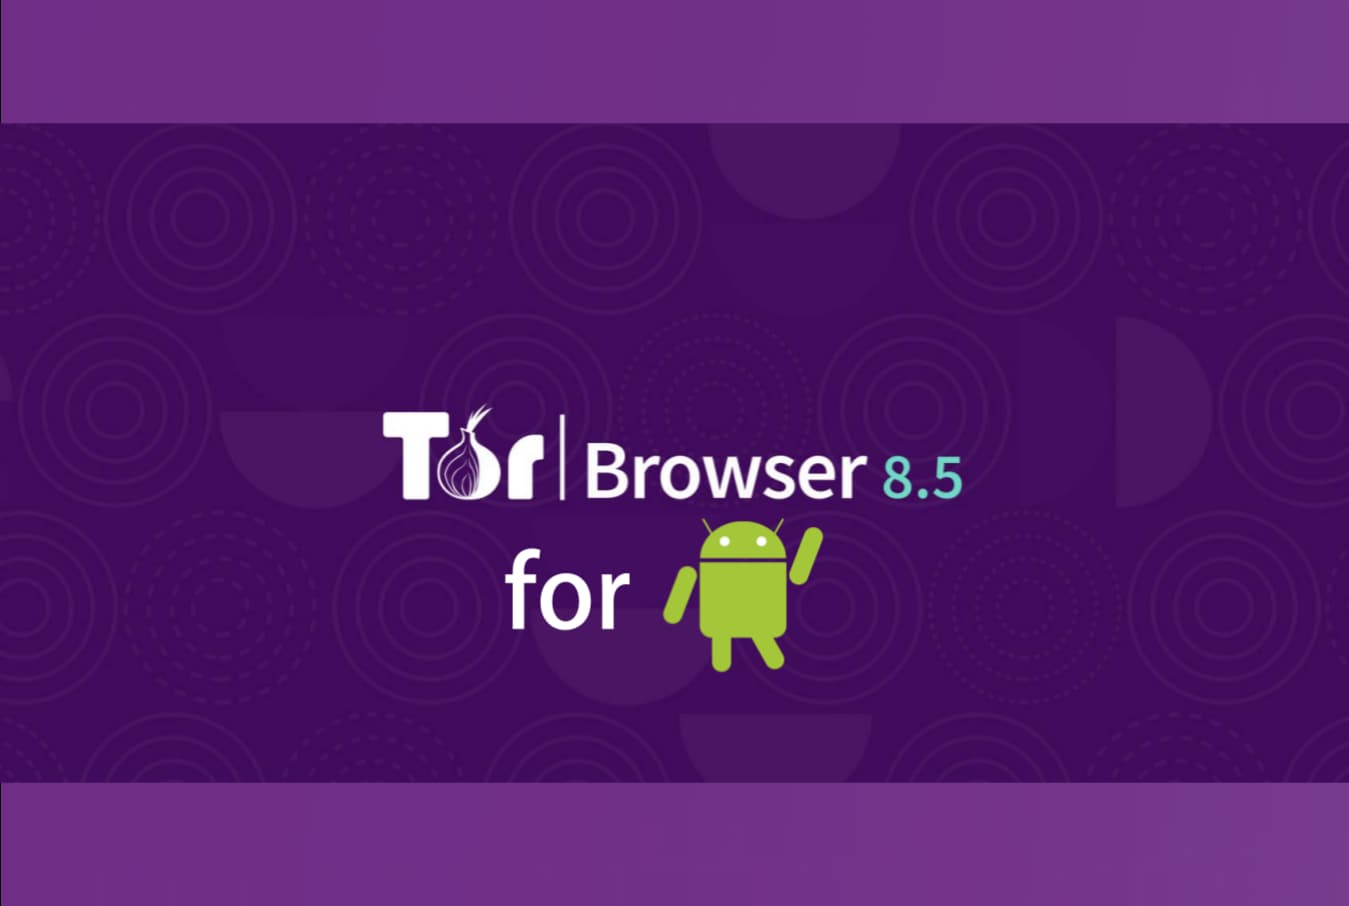 Tor browser download андроид hyrda вход в чем преимущества браузера тор гирда